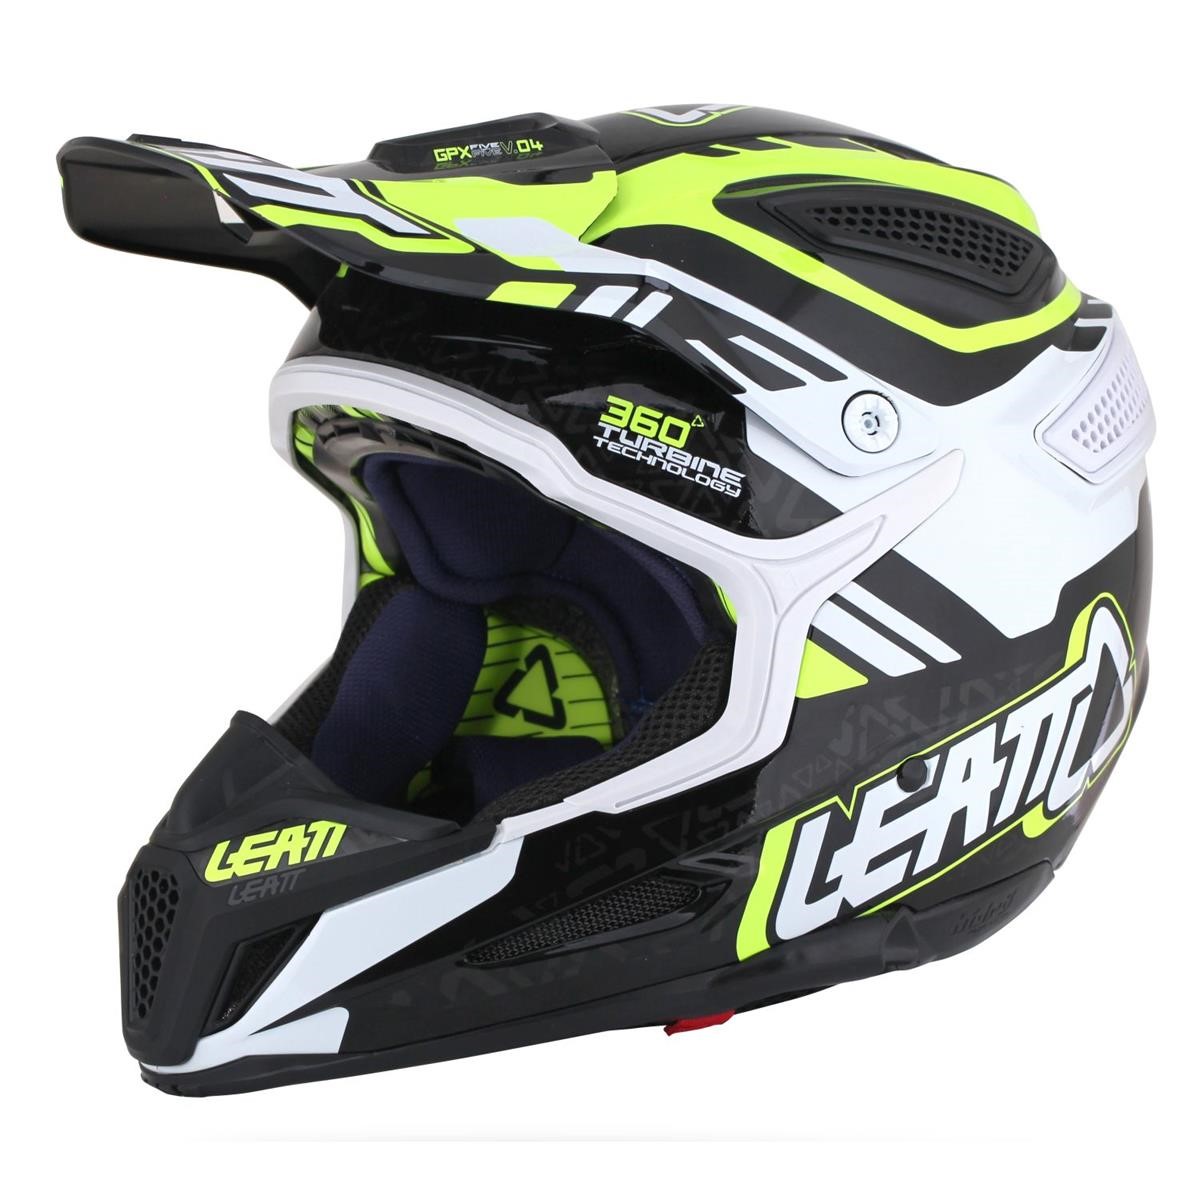 Leatt Helmet GPX 5.5 Composite V04 Yellow/Black/White